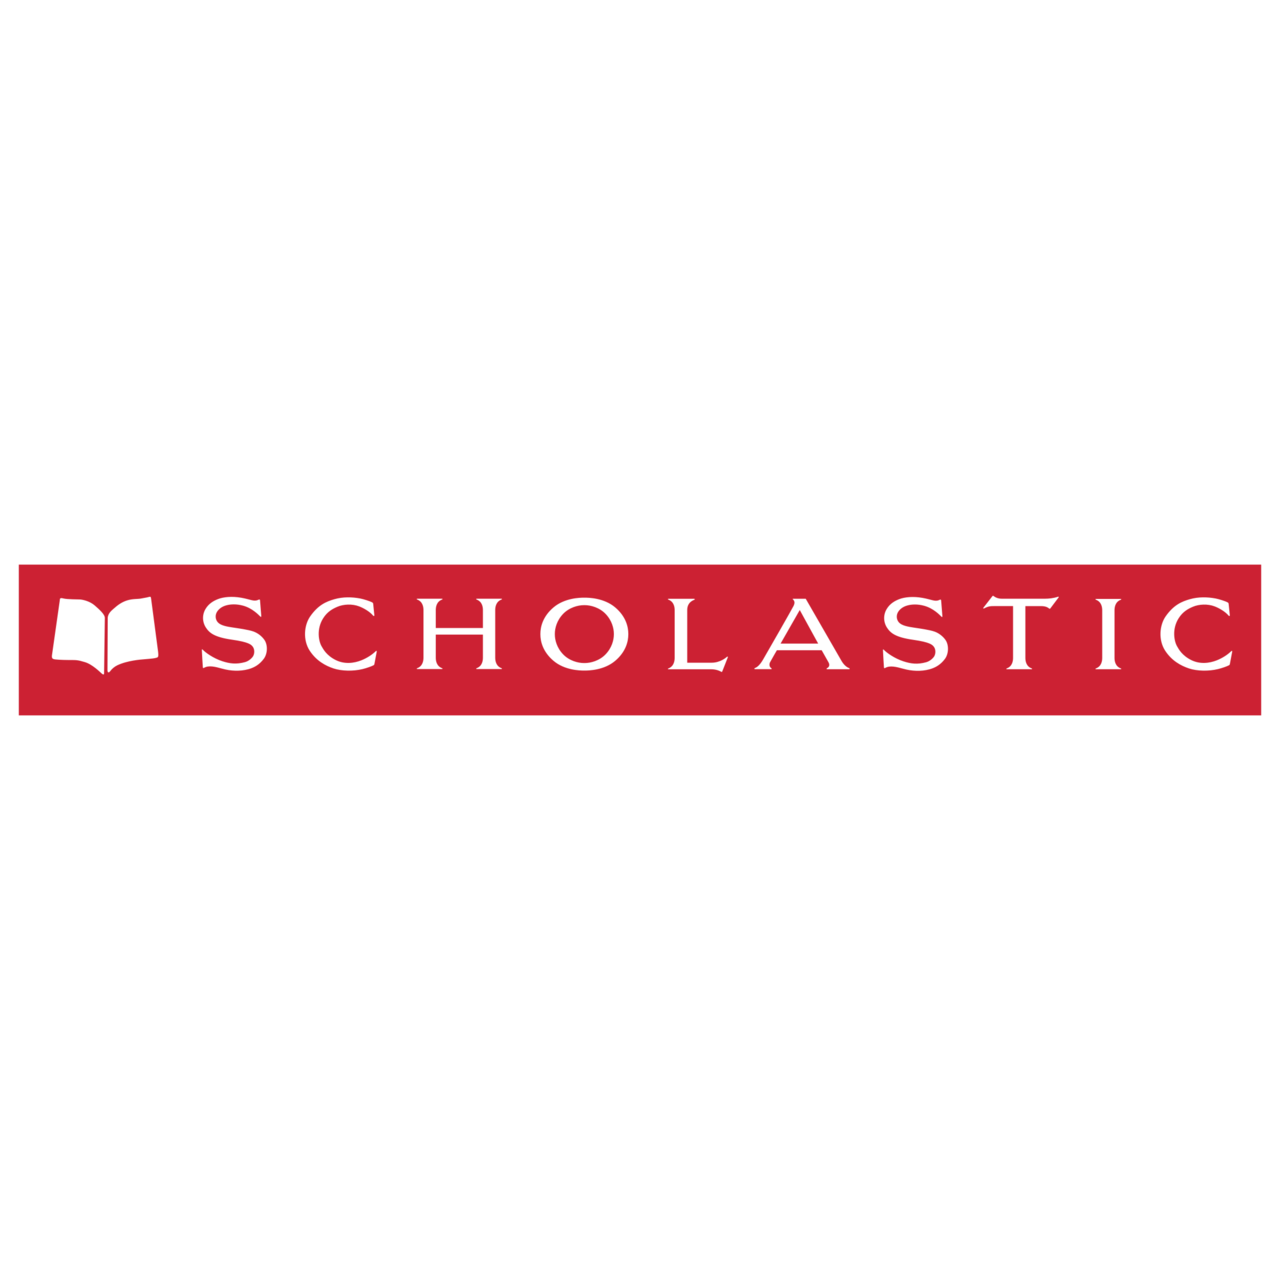 scholastic-logo.png